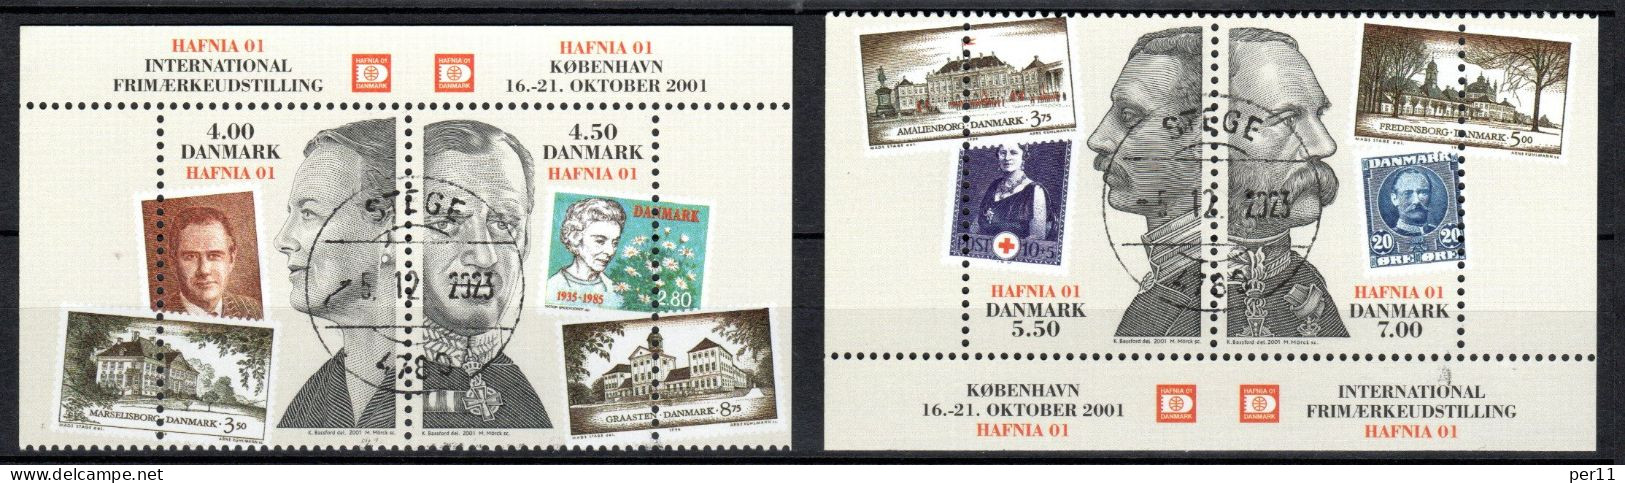 2001 Hafnia01 Stamp Excibition  (bl10) - Oblitérés